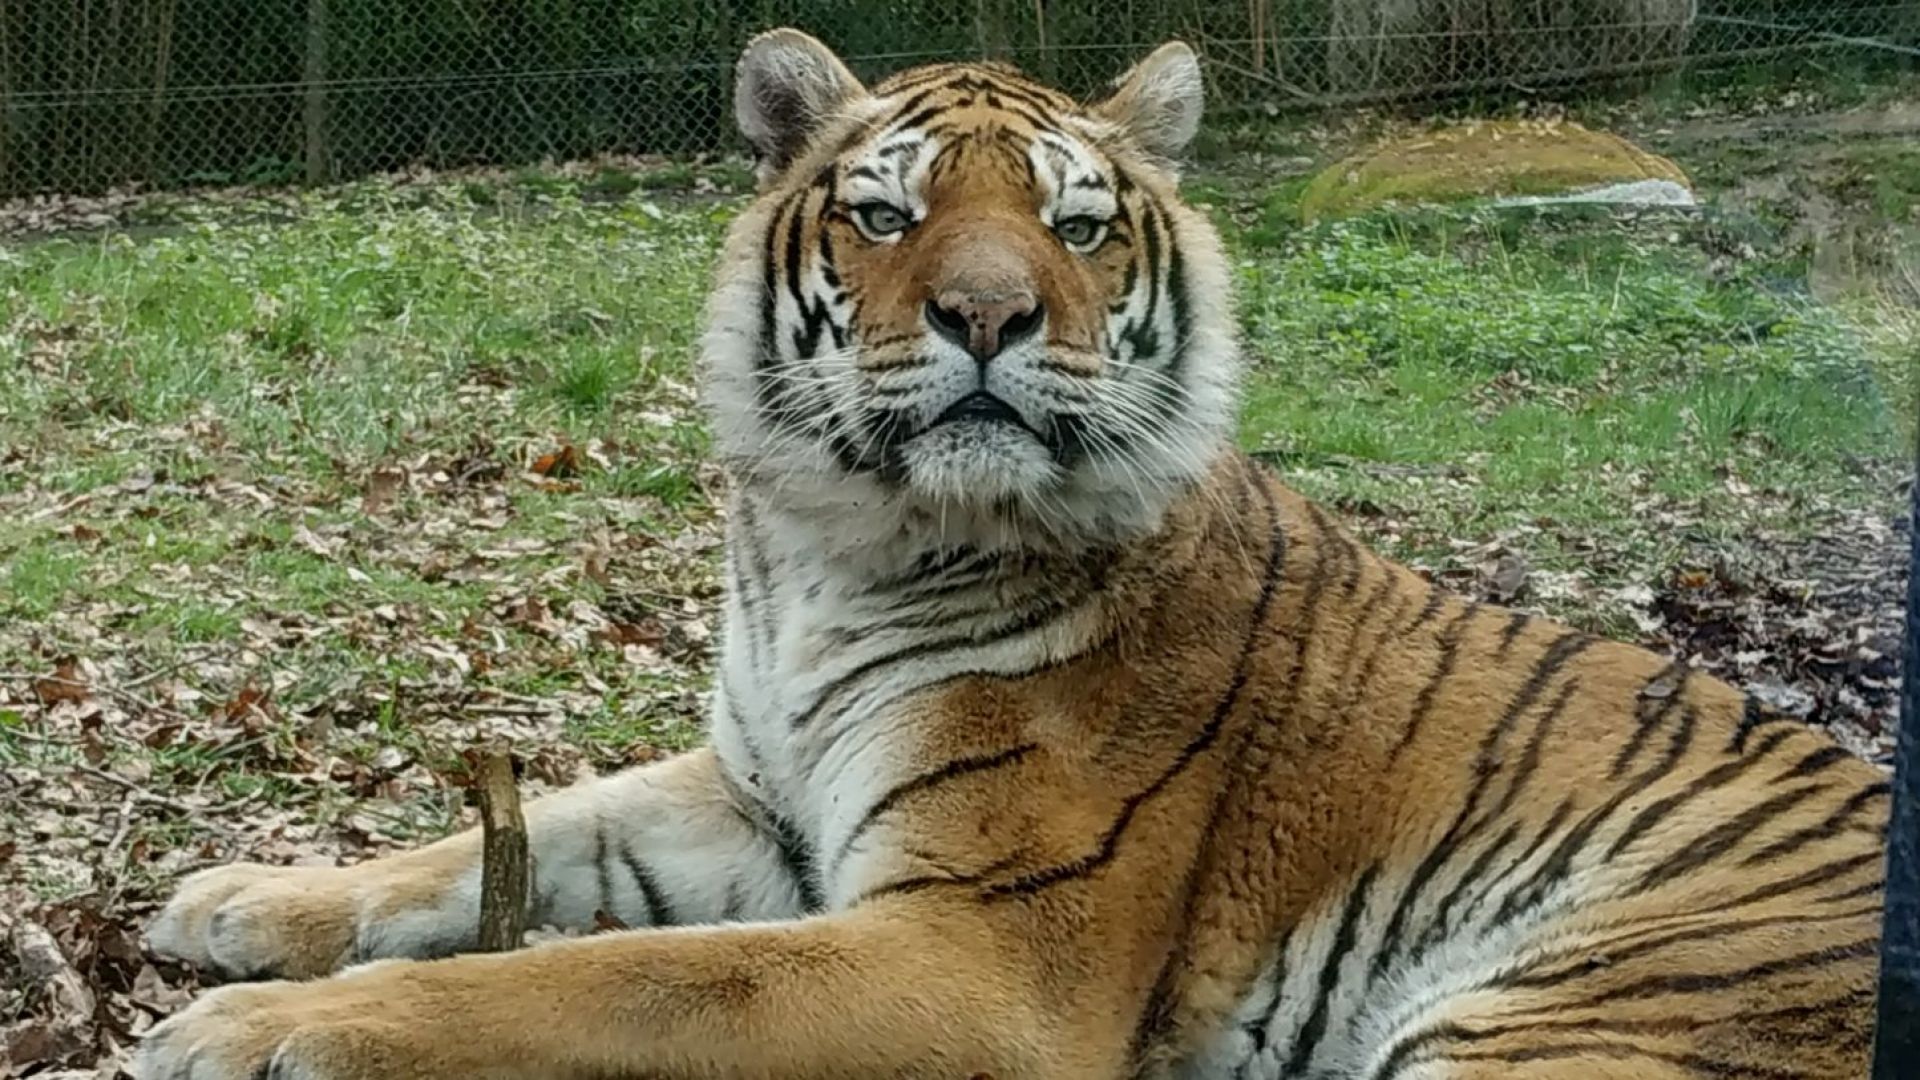  Tigre  taille  description biotope habitat reproduction